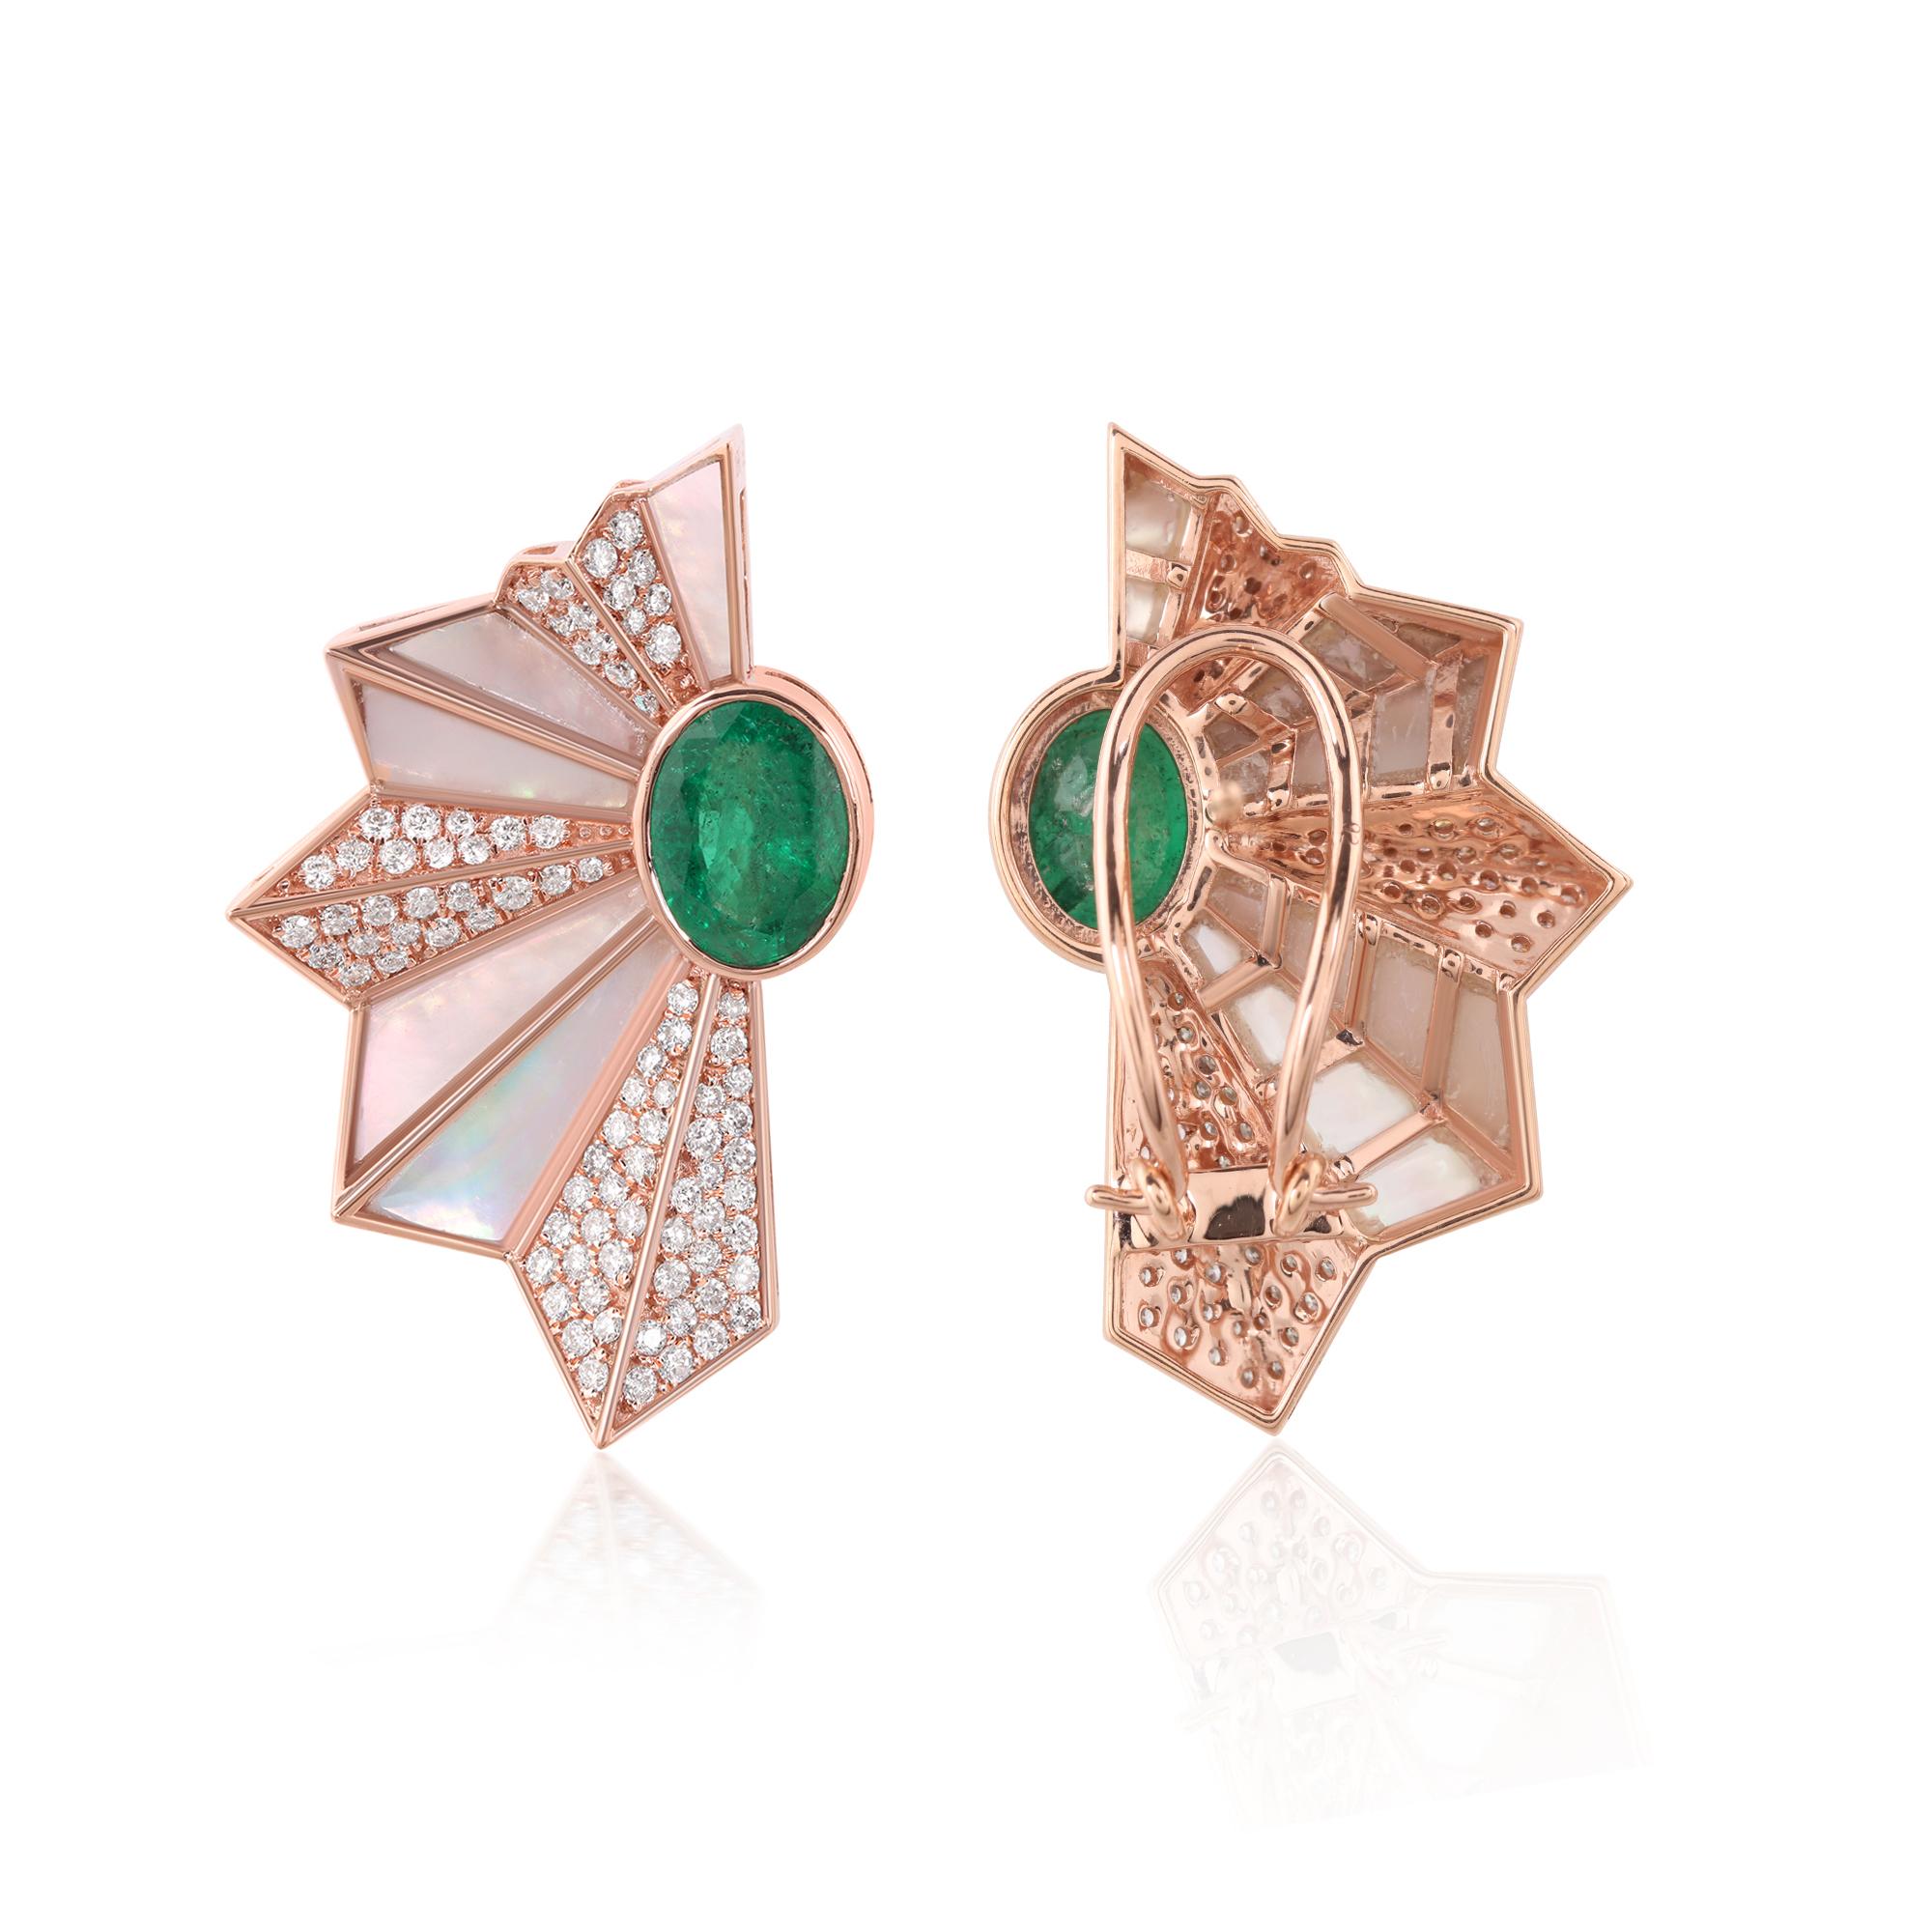 Im Mittelpunkt dieser Ohrringe stehen die prächtigen sambischen Smaragde, die für ihren satten grünen Farbton und ihre unvergleichliche Schönheit bekannt sind. Diese natürlichen Edelsteine werden sorgfältig nach ihrer außergewöhnlichen Qualität